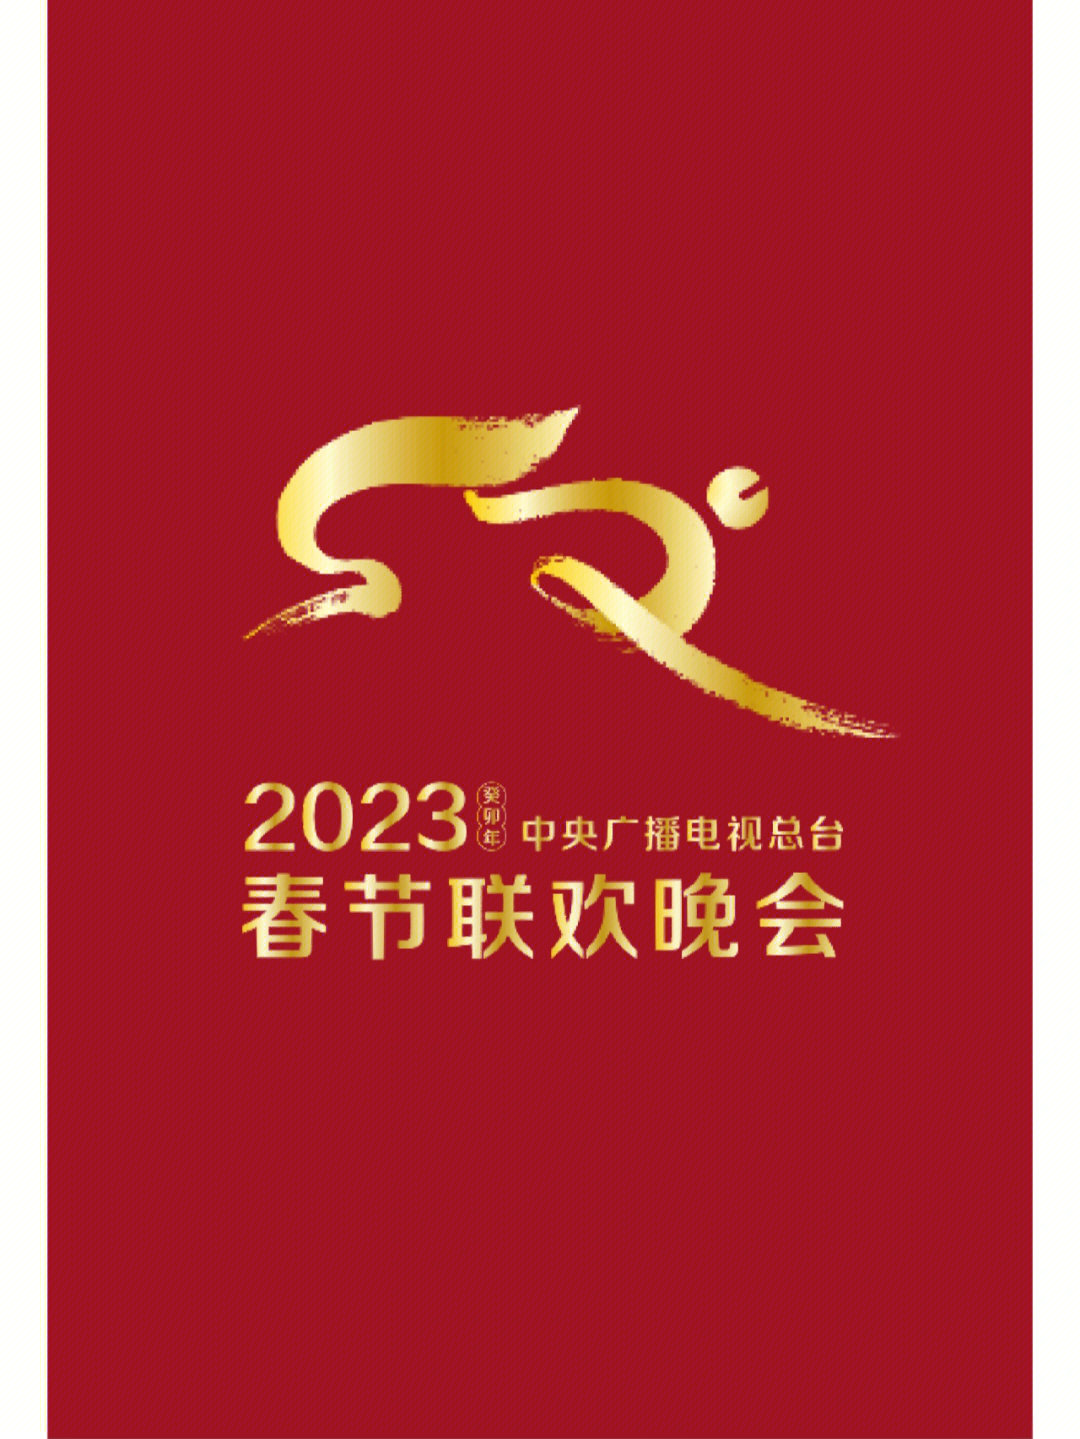 2020年春晚logo图片